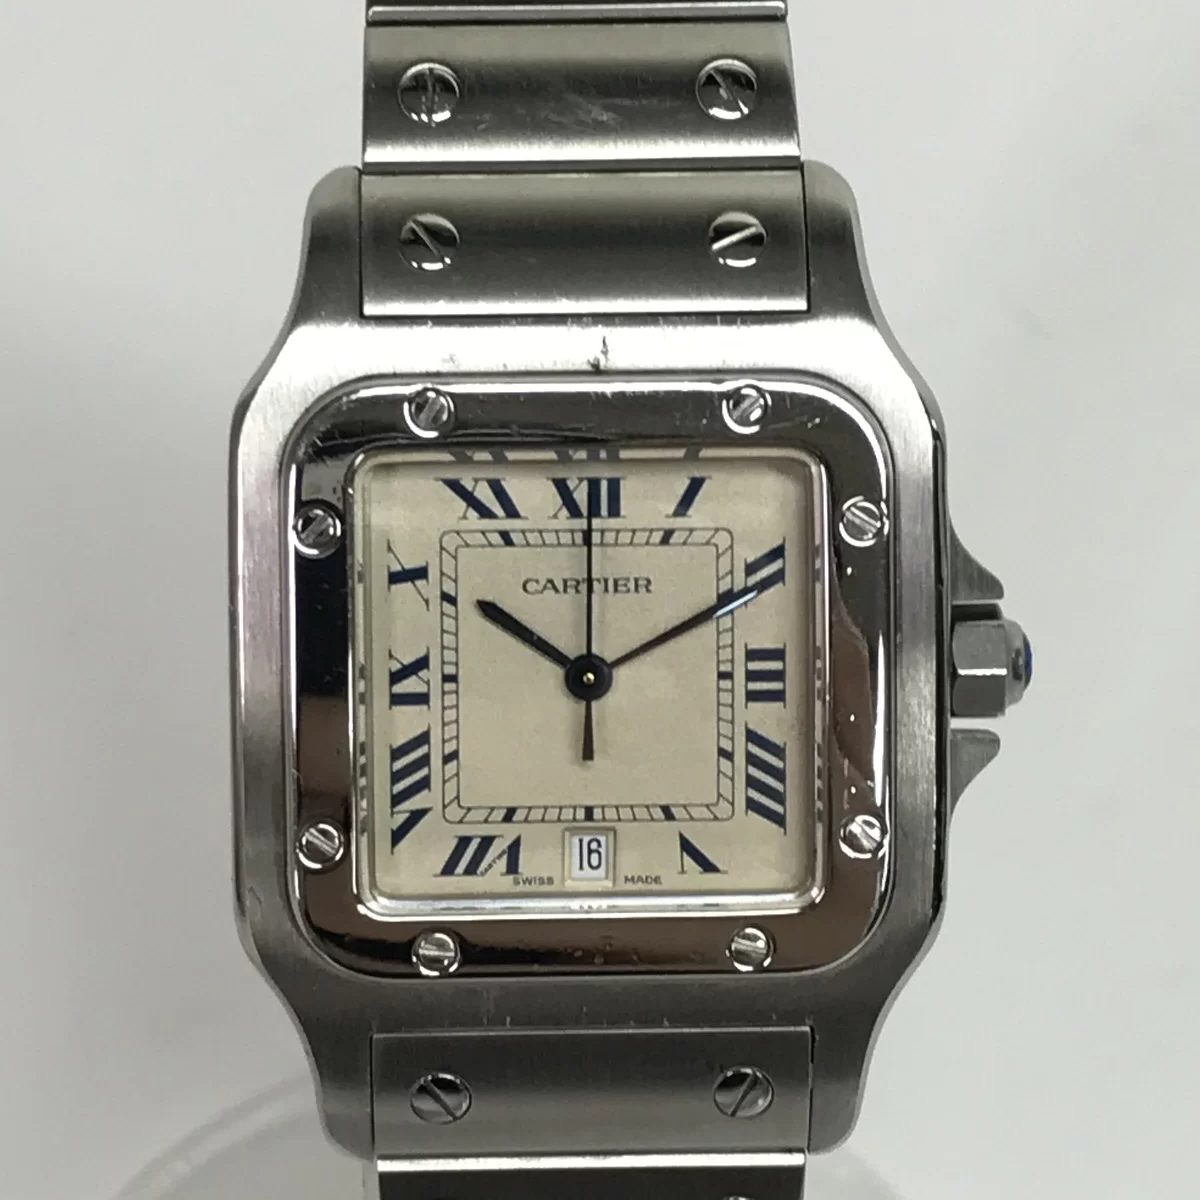 カルティエの987901 サントスガルベLM デイト付き ステンレス クオーツ腕時計の買取実績です。